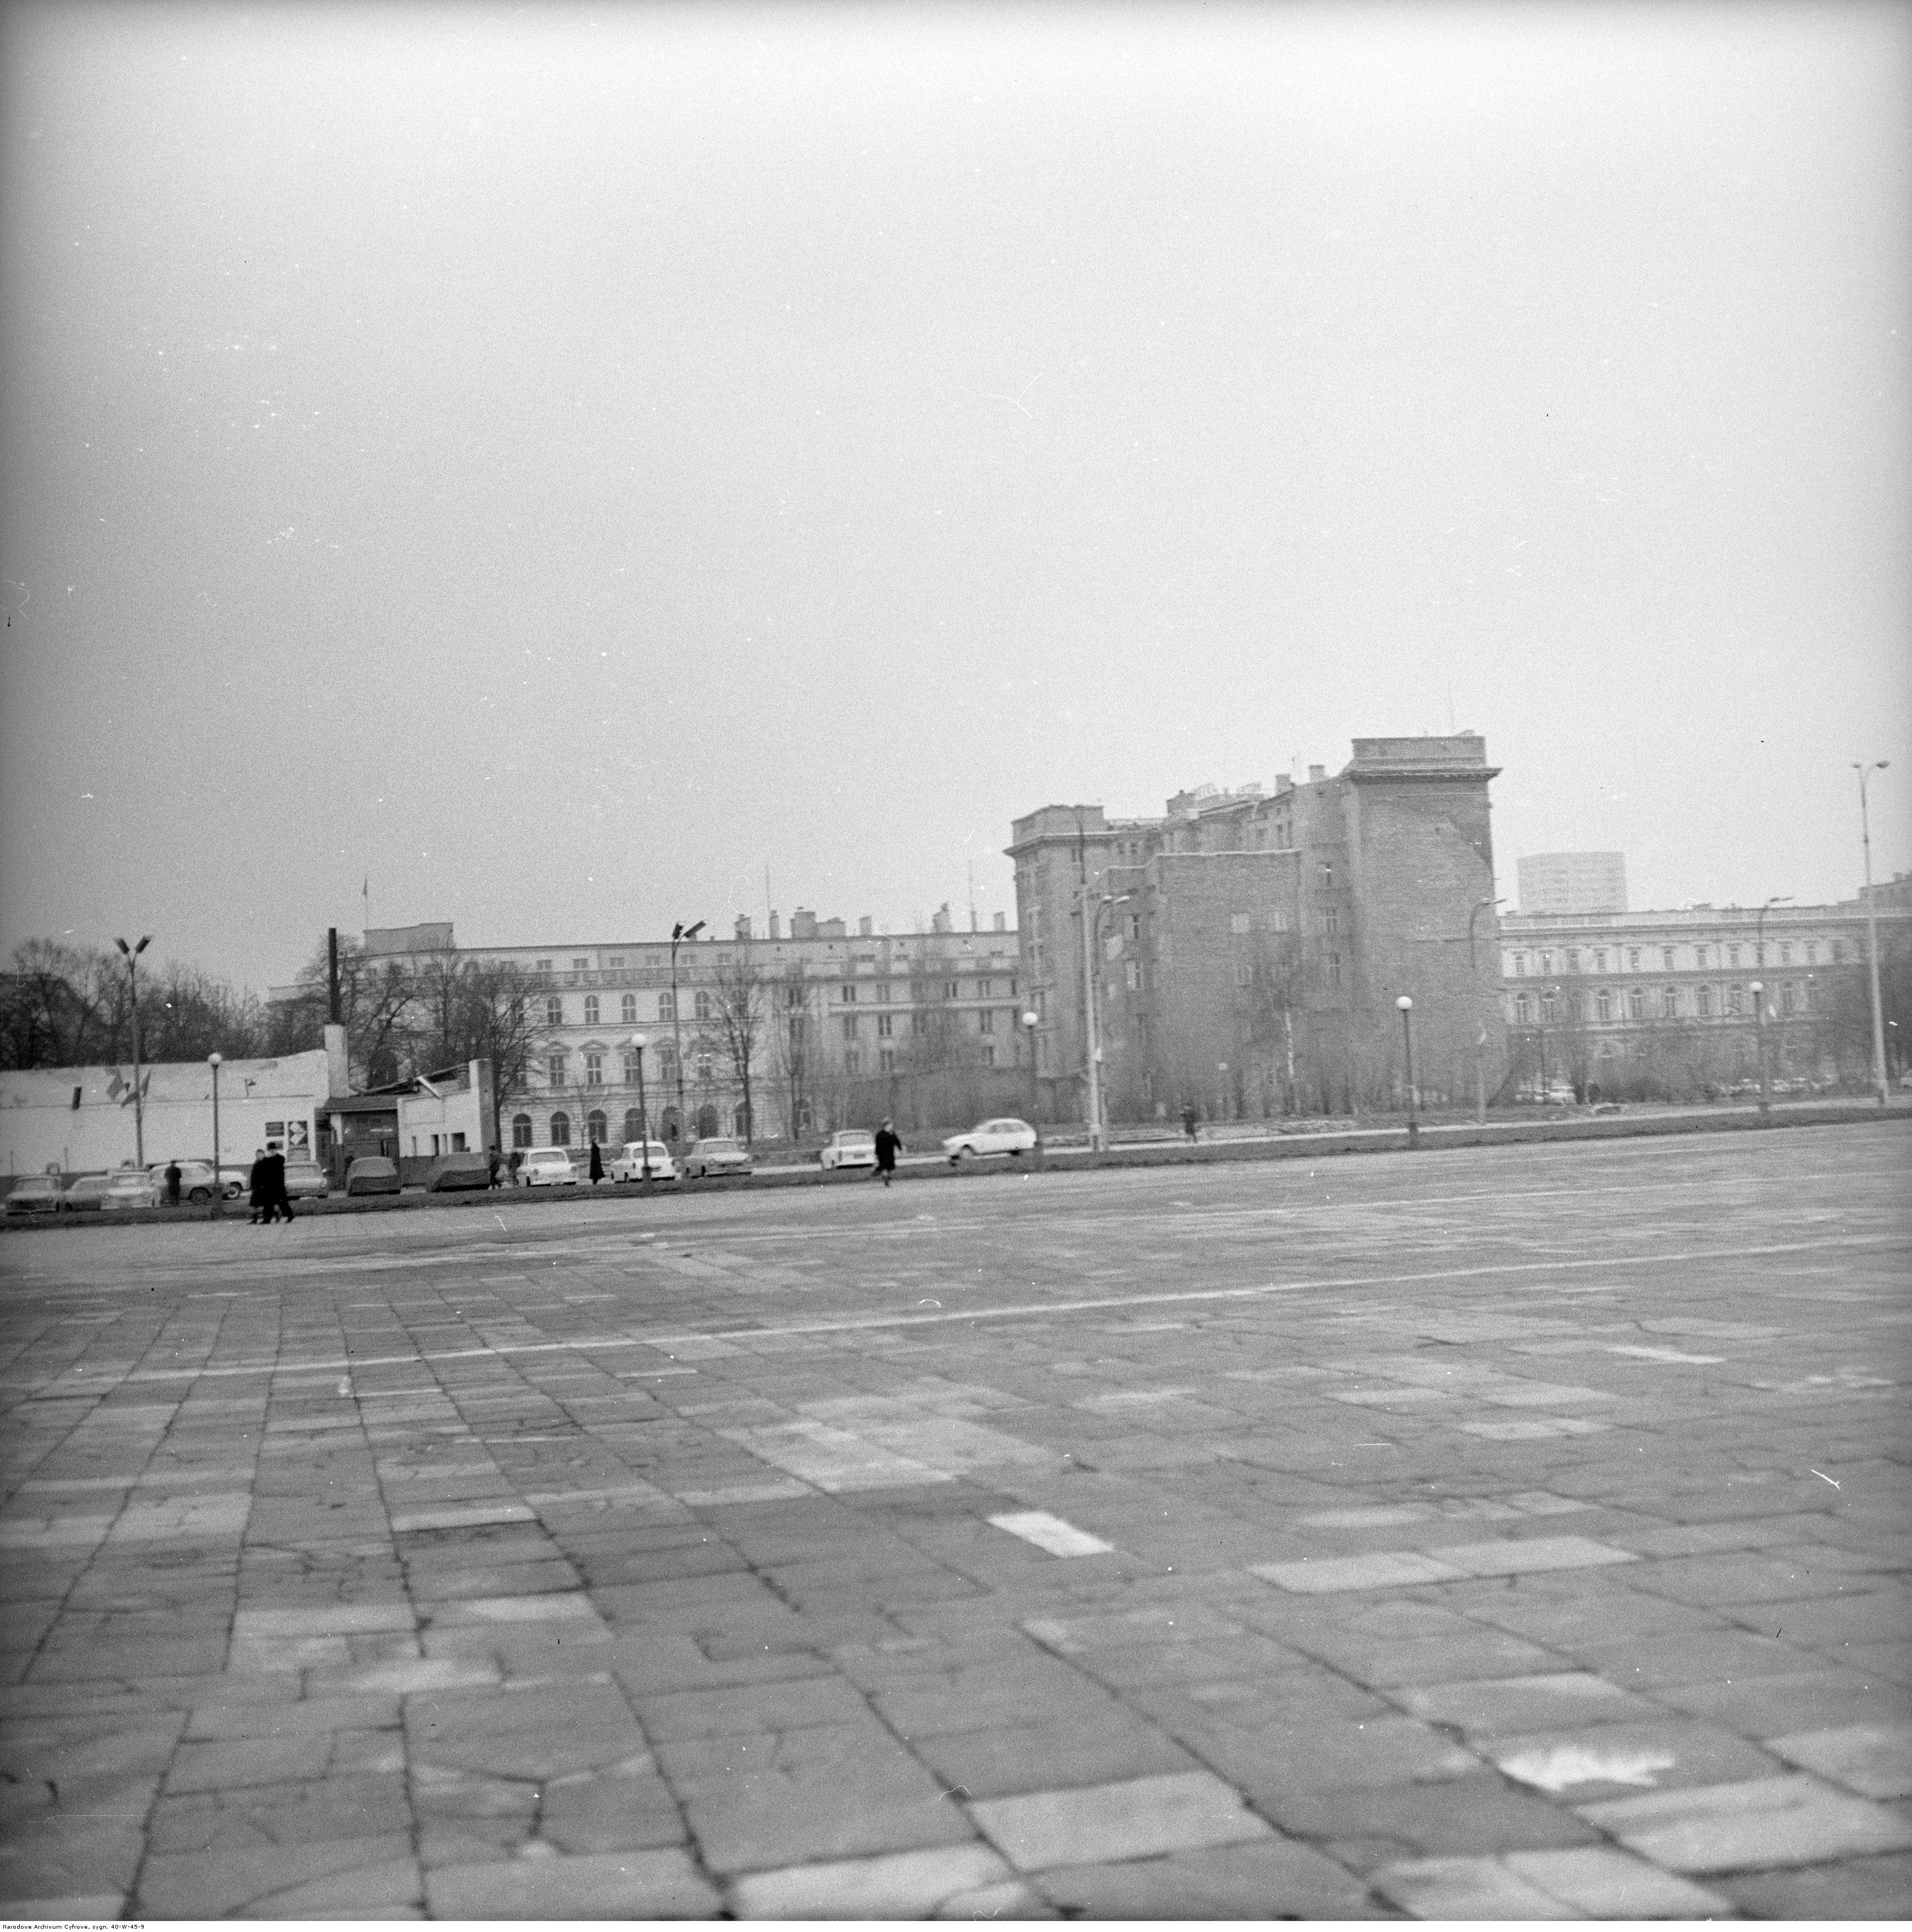 Pusty plac po pałacu Kronenberga, 1970 rok. Foto: Narodowe Archiwum Cyfrowe